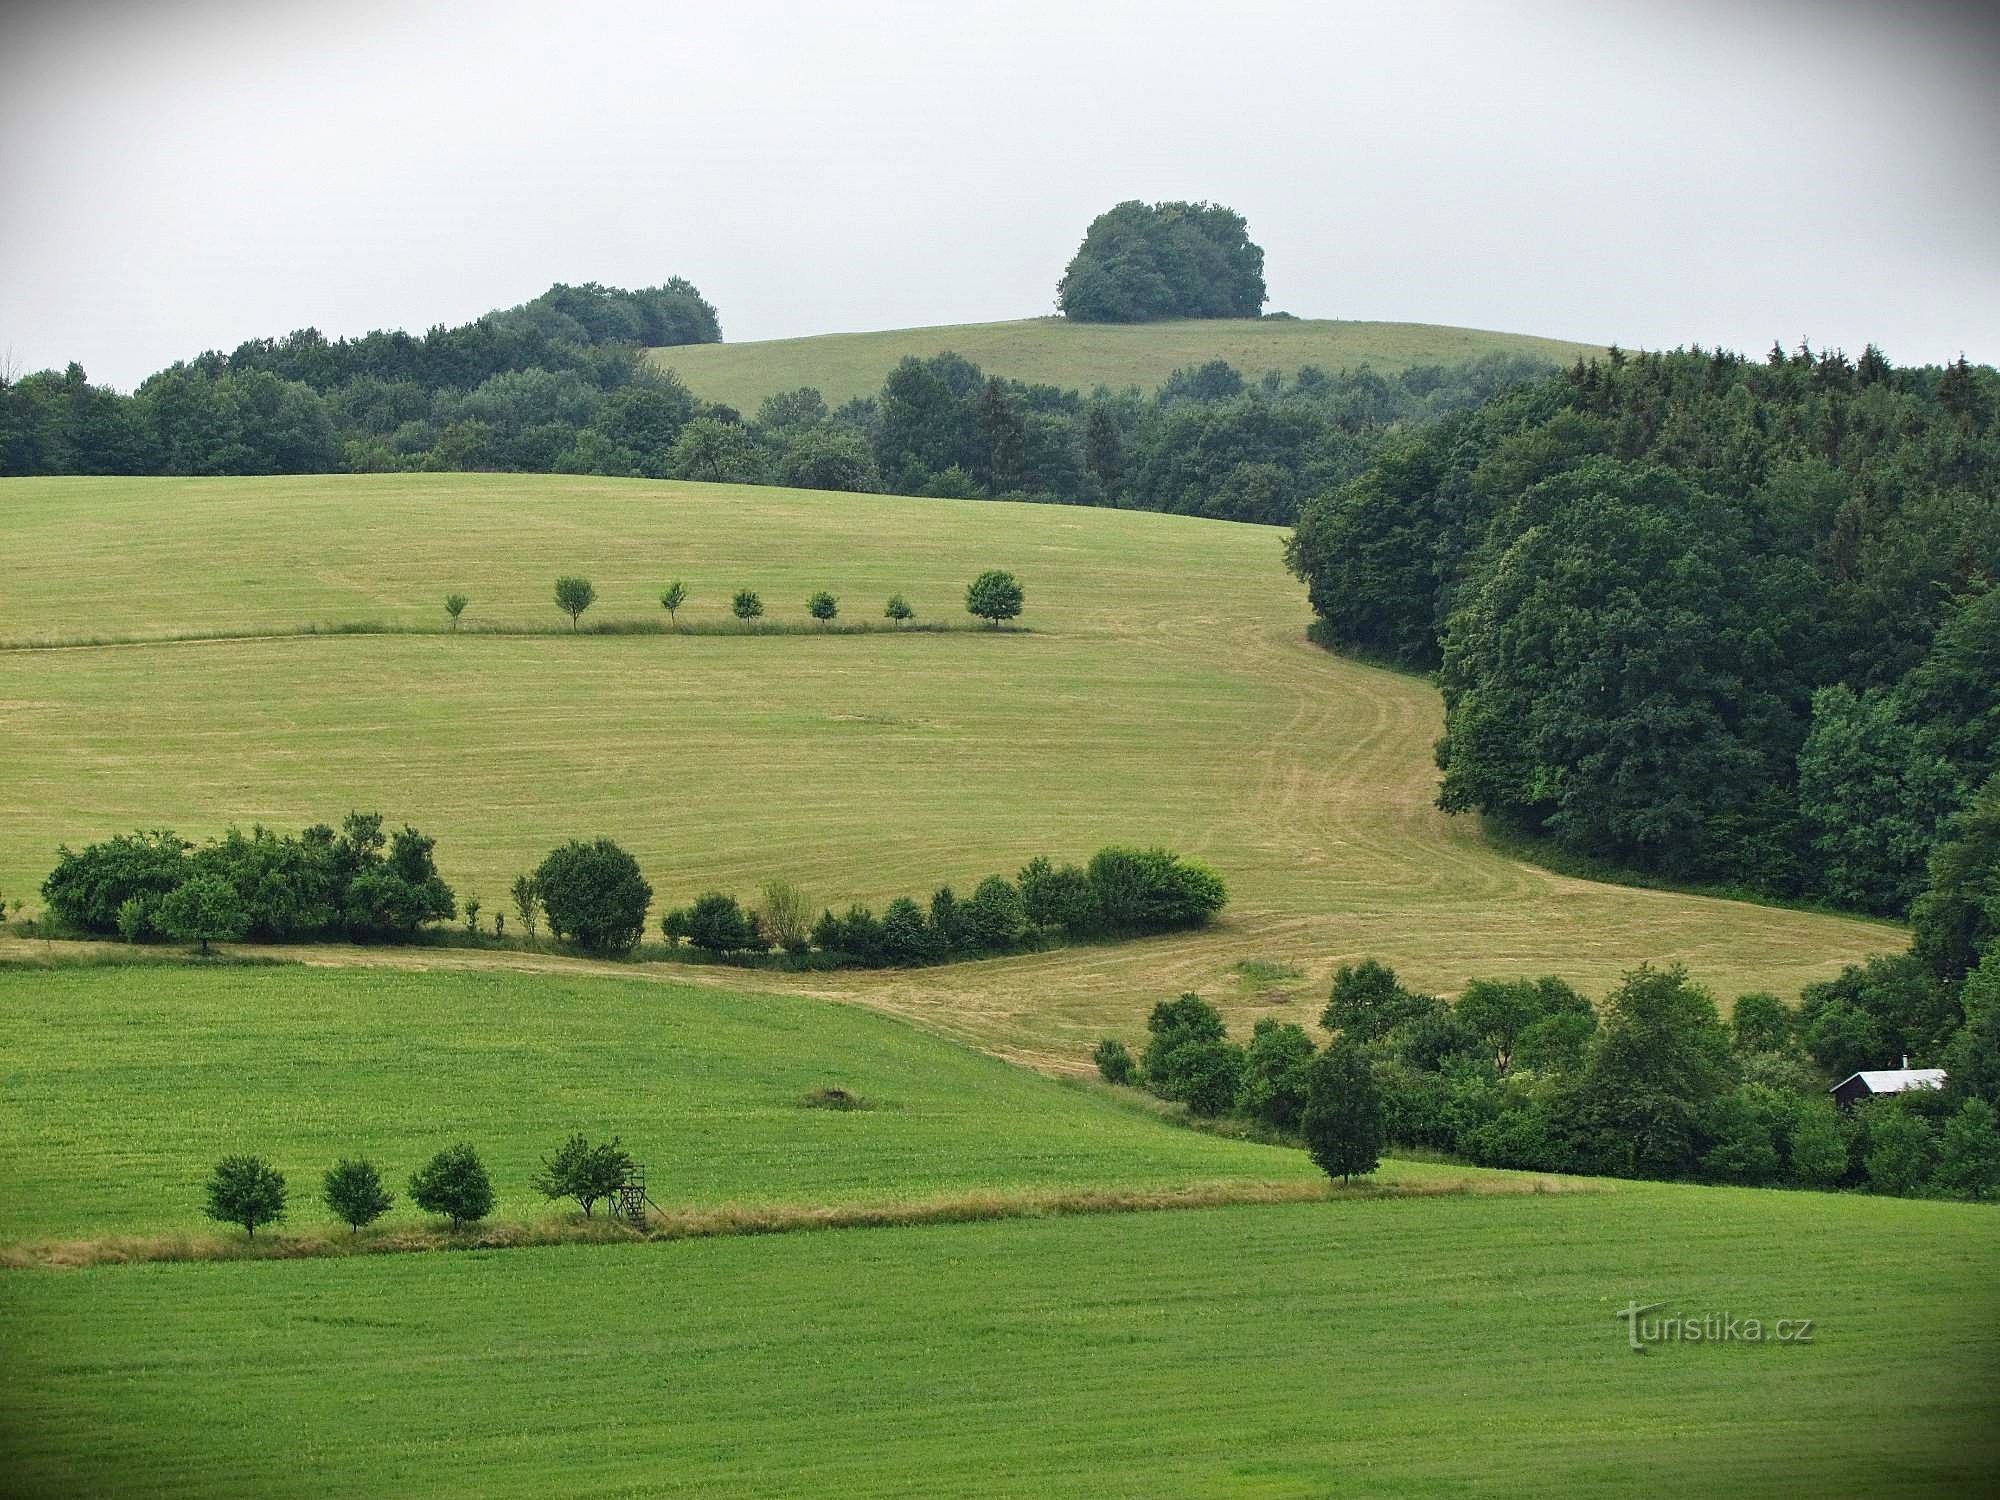 Views from Březová hill